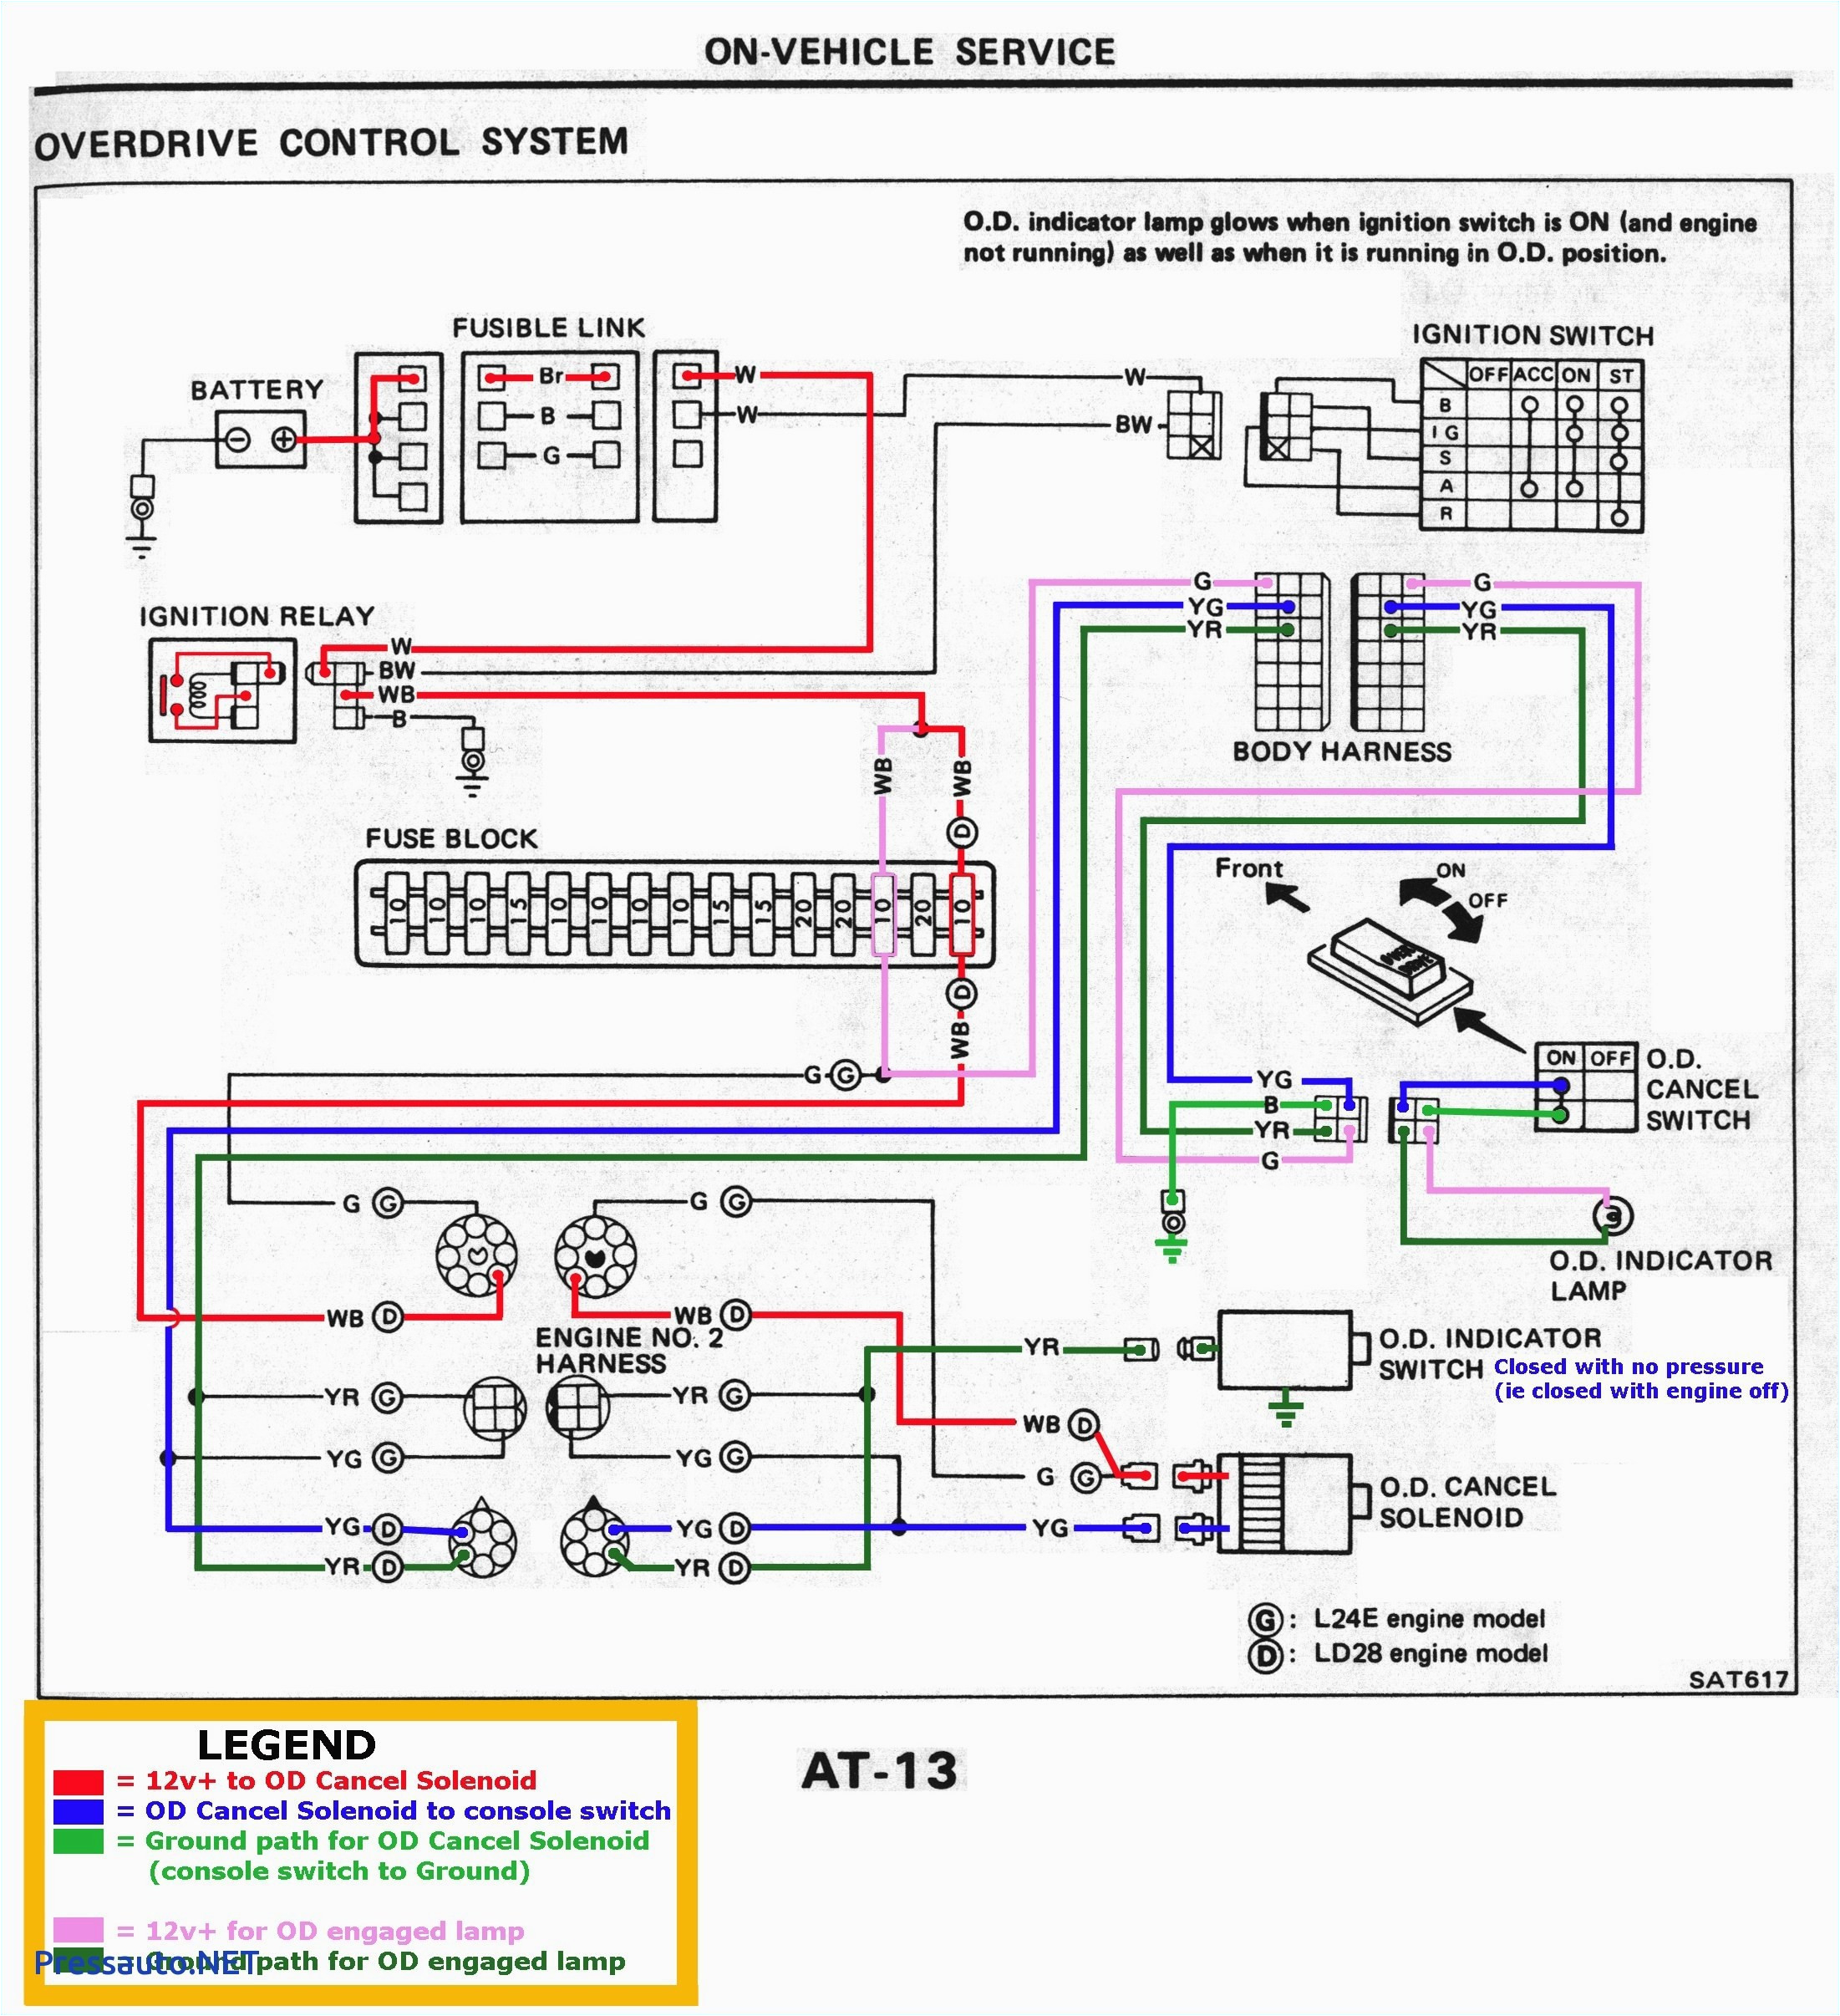 fulham wh3 120 l wiring diagram luxury fulham ballast wiring diagramfulham wh3 120 l wiring diagram